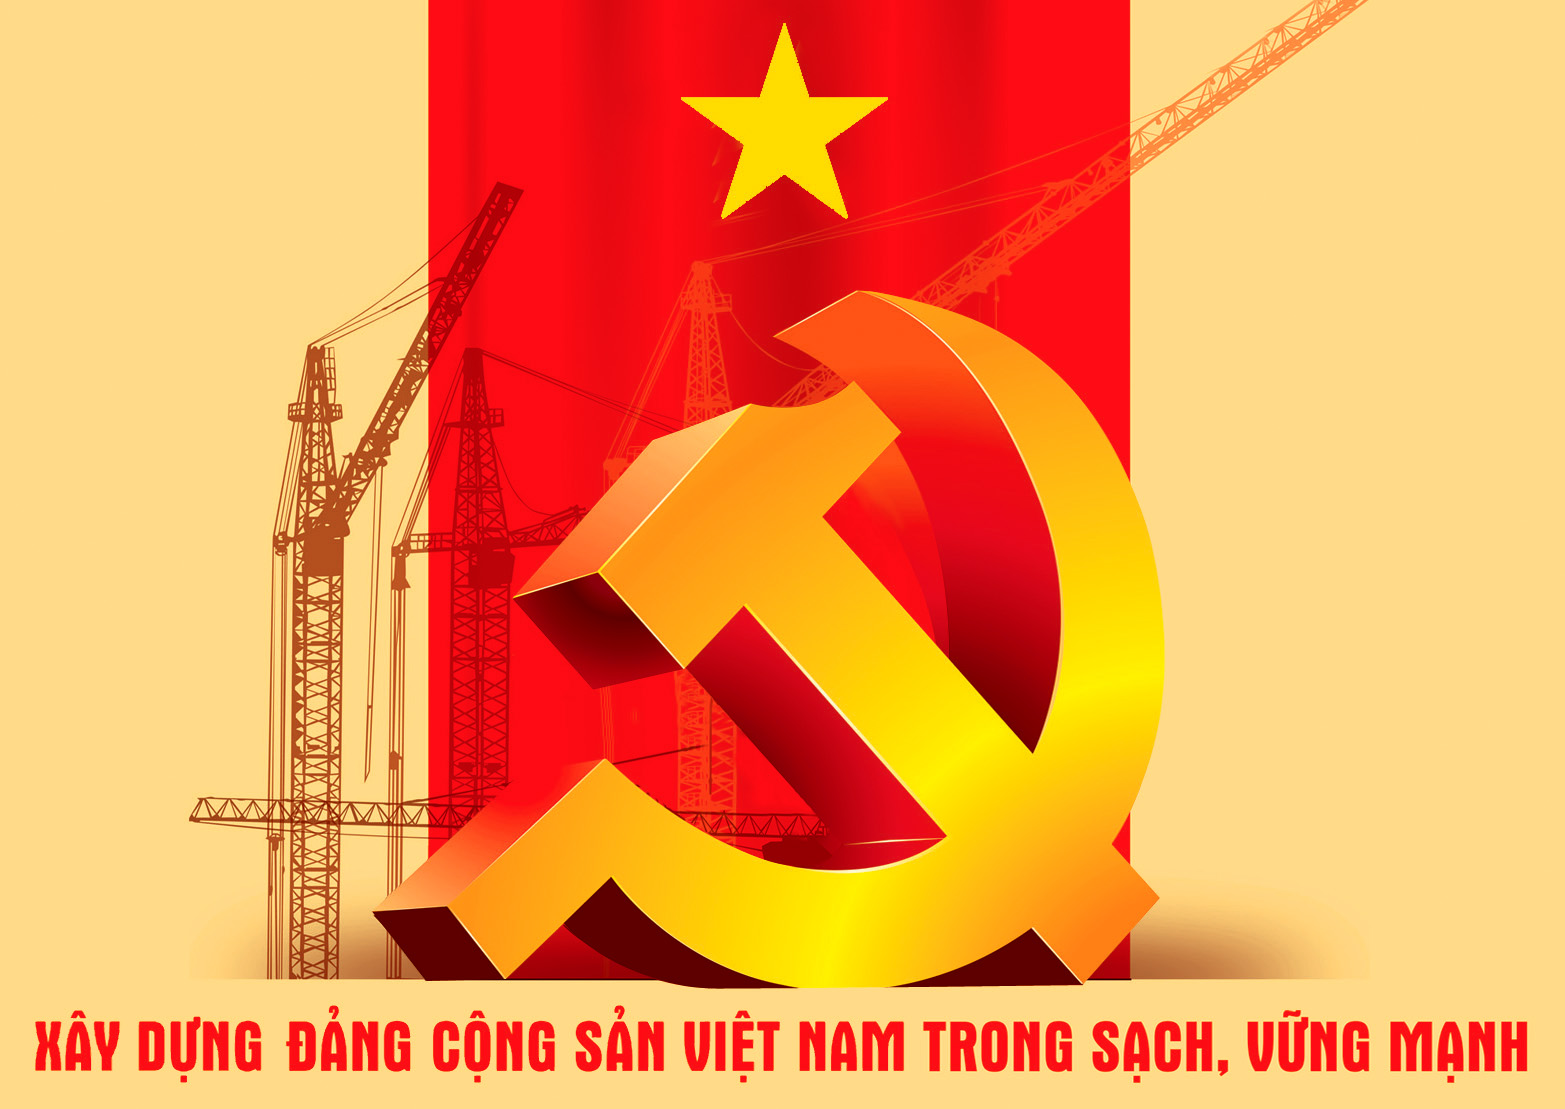 Hình cờ đảng cộng sản là một tuyên ngôn mạnh mẽ về tình yêu với đất nước, lòng trung thành với đảng và nhân dân. Sự hiện diện của biểu tượng này là một cách thể hiện quyết định phương trình và định hướng phát triển cho đất nước. Hãy xem hình cờ đảng cộng sản để hiểu rõ hơn về giá trị của nó.